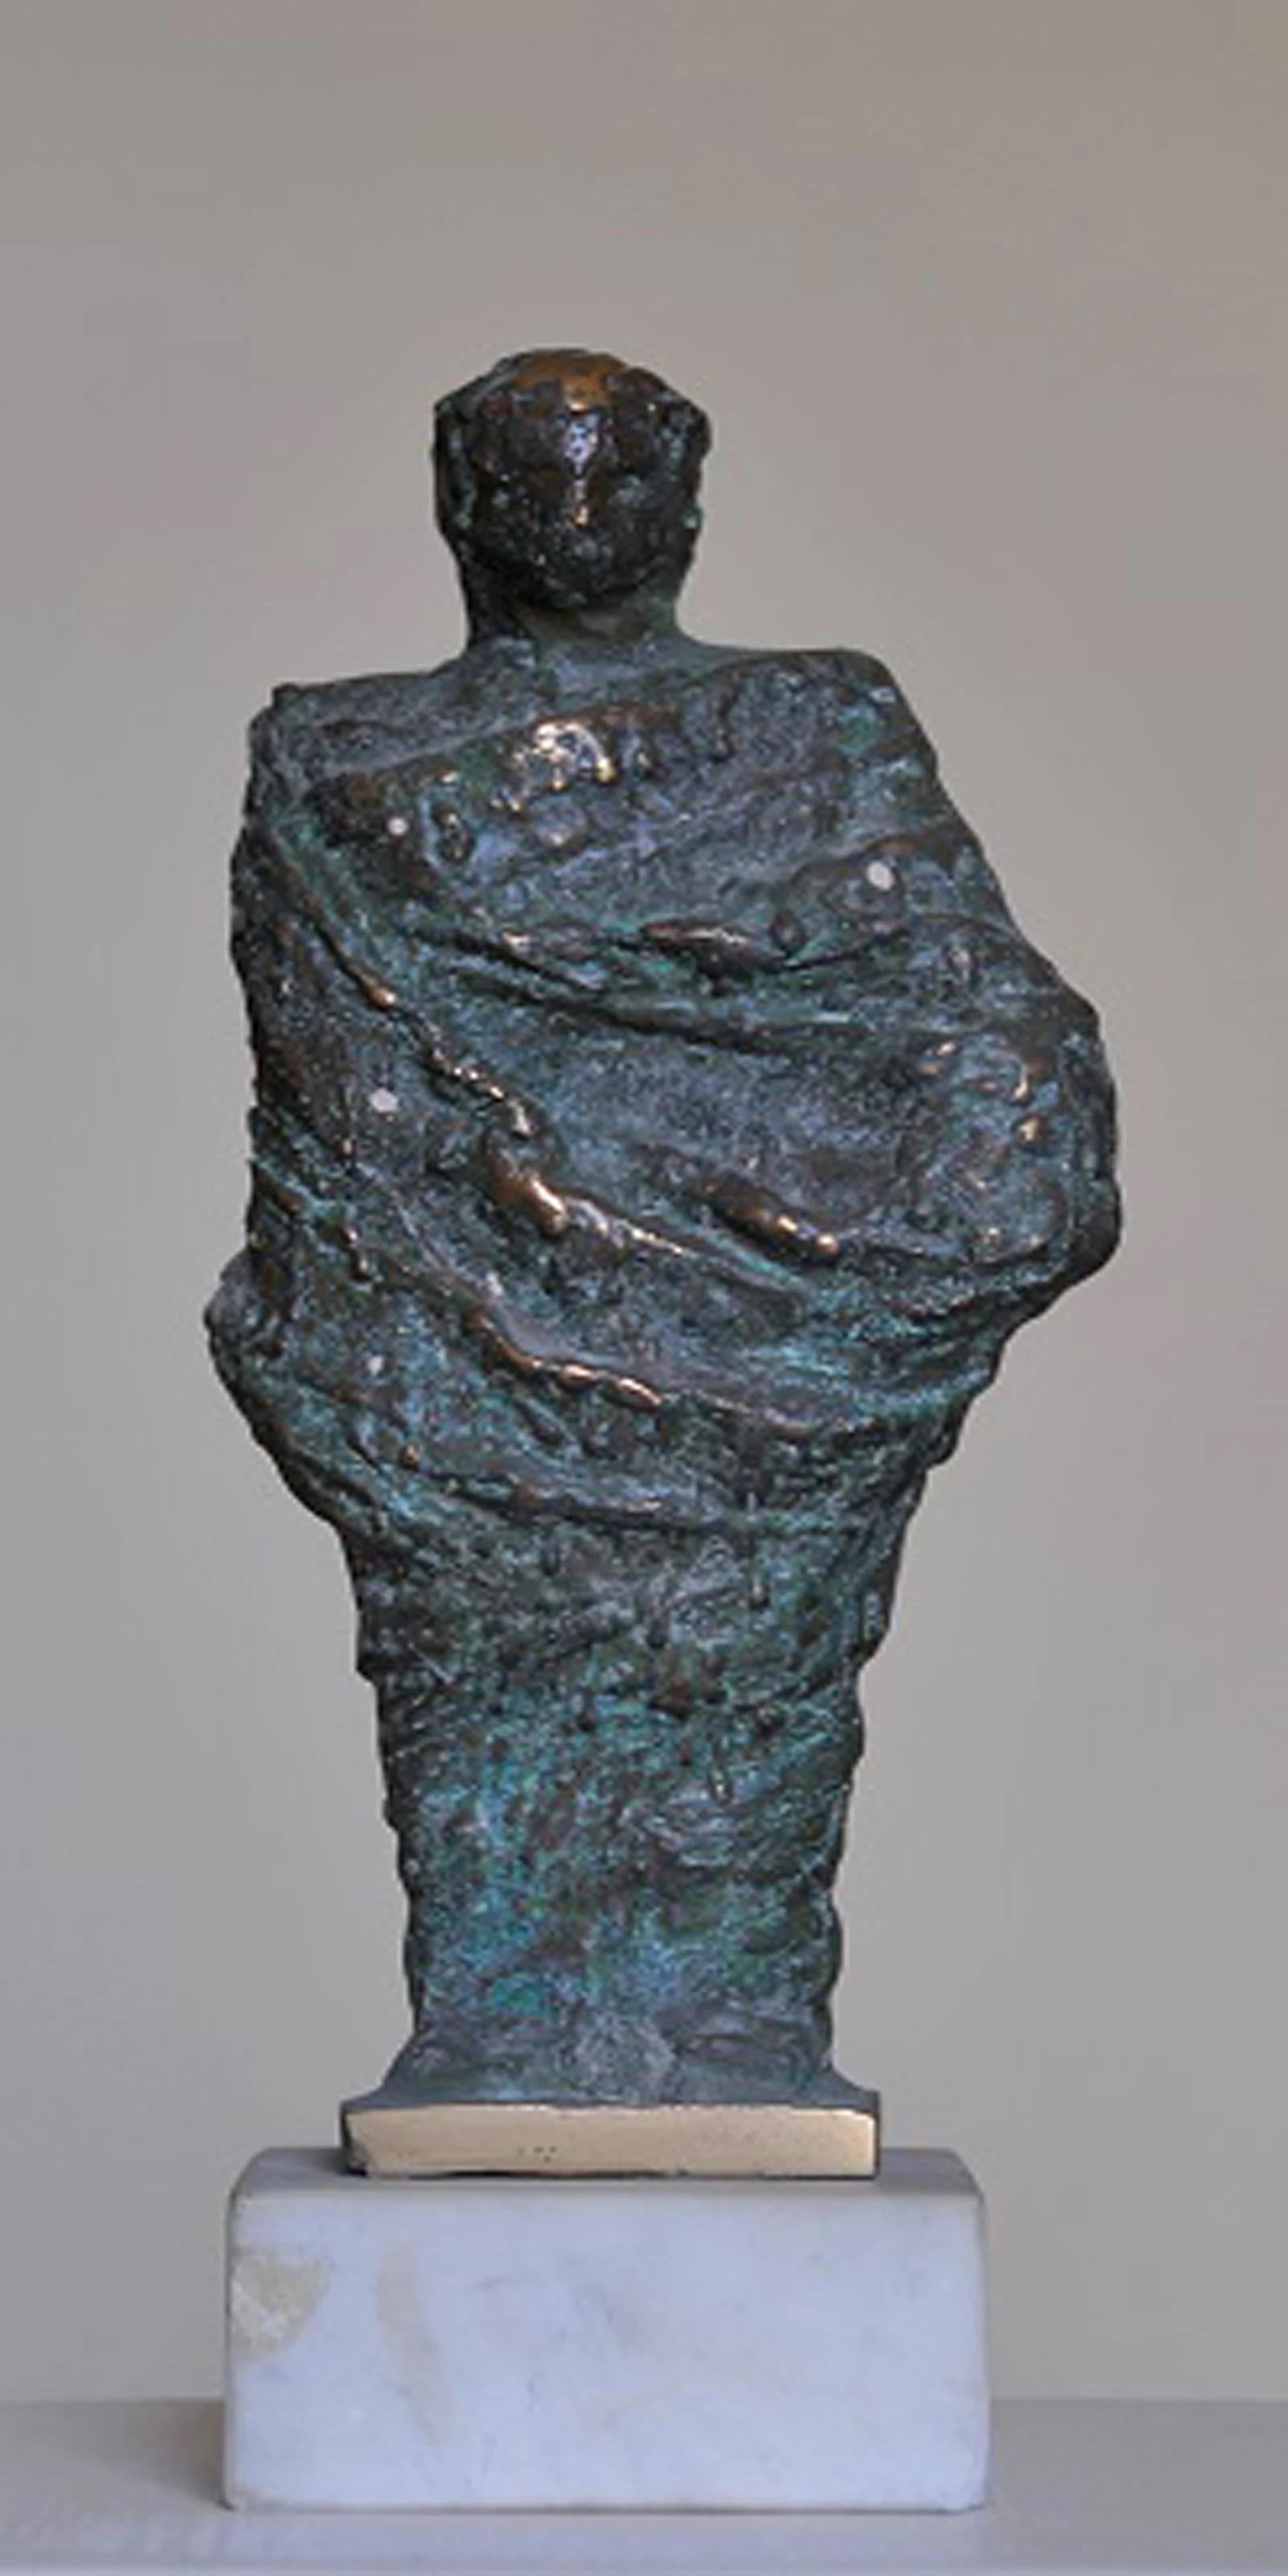 Sculpture en bronze "Robed III" 9,5" x 4" x 3" pouces par Sarkis Tossonian

Sarkis Tossoonian est né à Alexandrie en 1953. Il est diplômé de la Faculté des Beaux-Arts/Sculpture en 1979. Il a commencé à exposer dans des expositions individuelles et